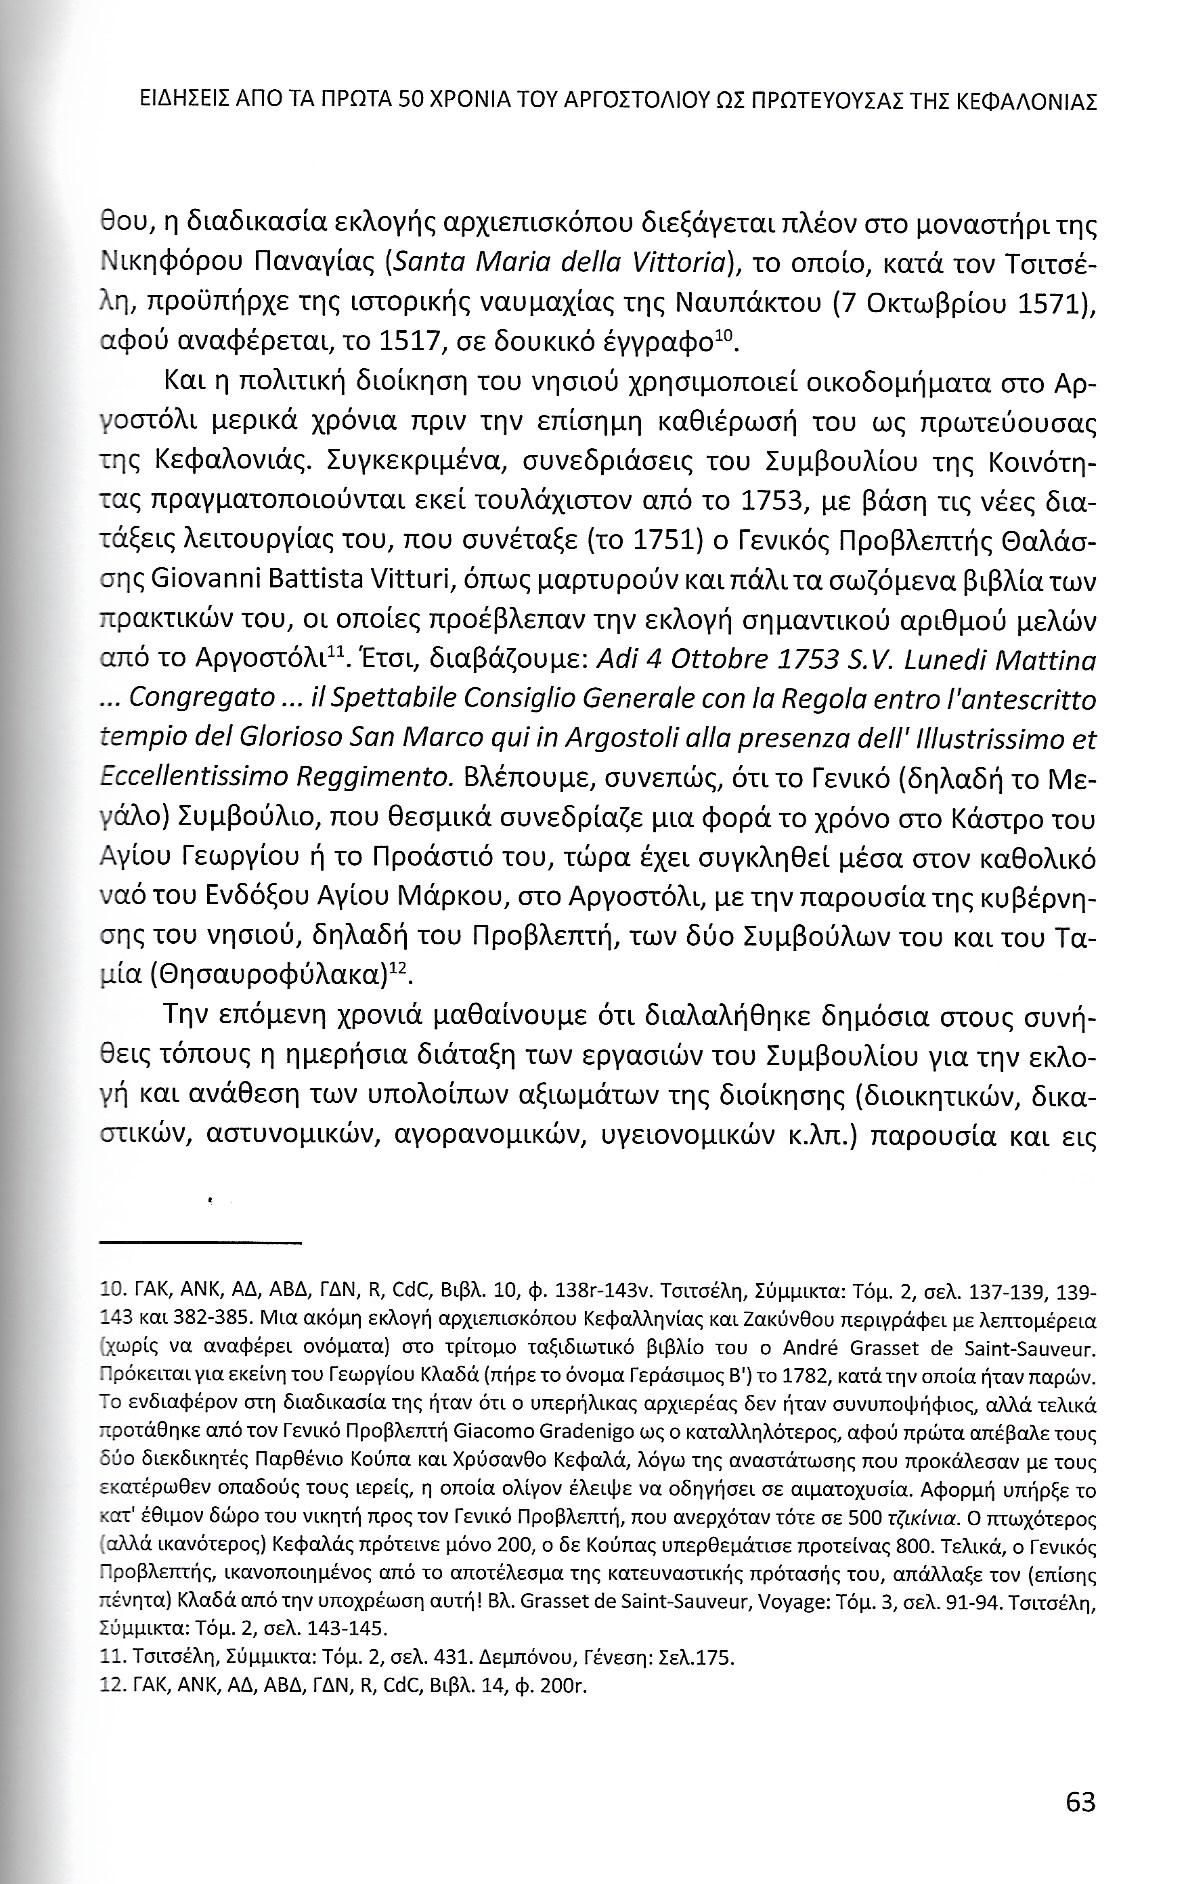 Πρώτα 50 χρόνια Αργοστολίου ως πρωτεύουσας Κεφαλονιάς, Ιονικά Ανάλεκτα, τ. 7, σελ. 63